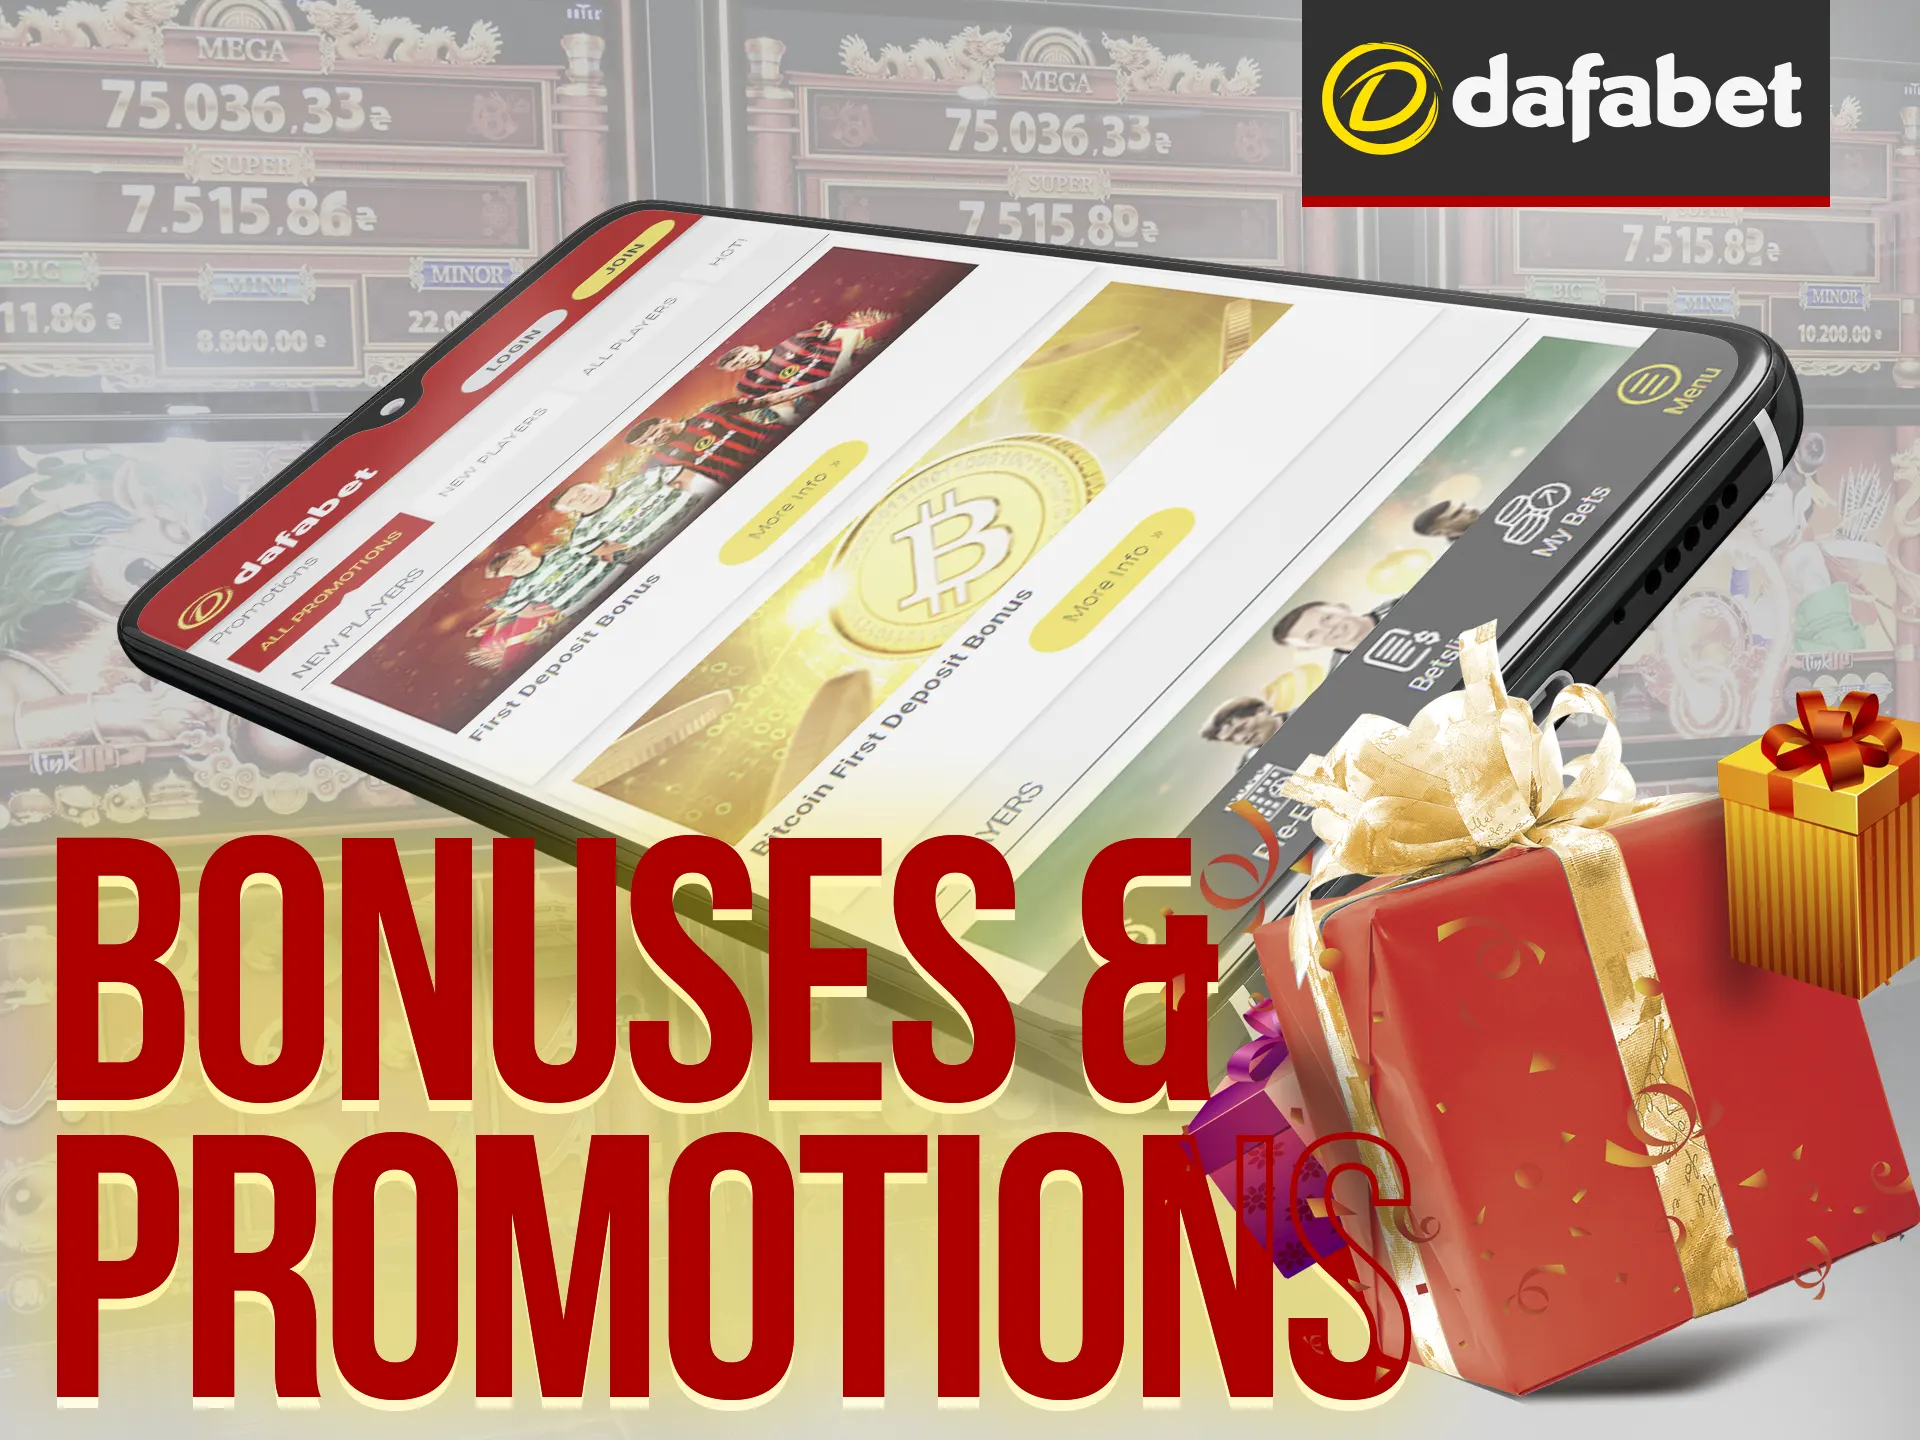 Dafabet offers diverse bonuses, including a 160% sports bonus up to INR 16,000.